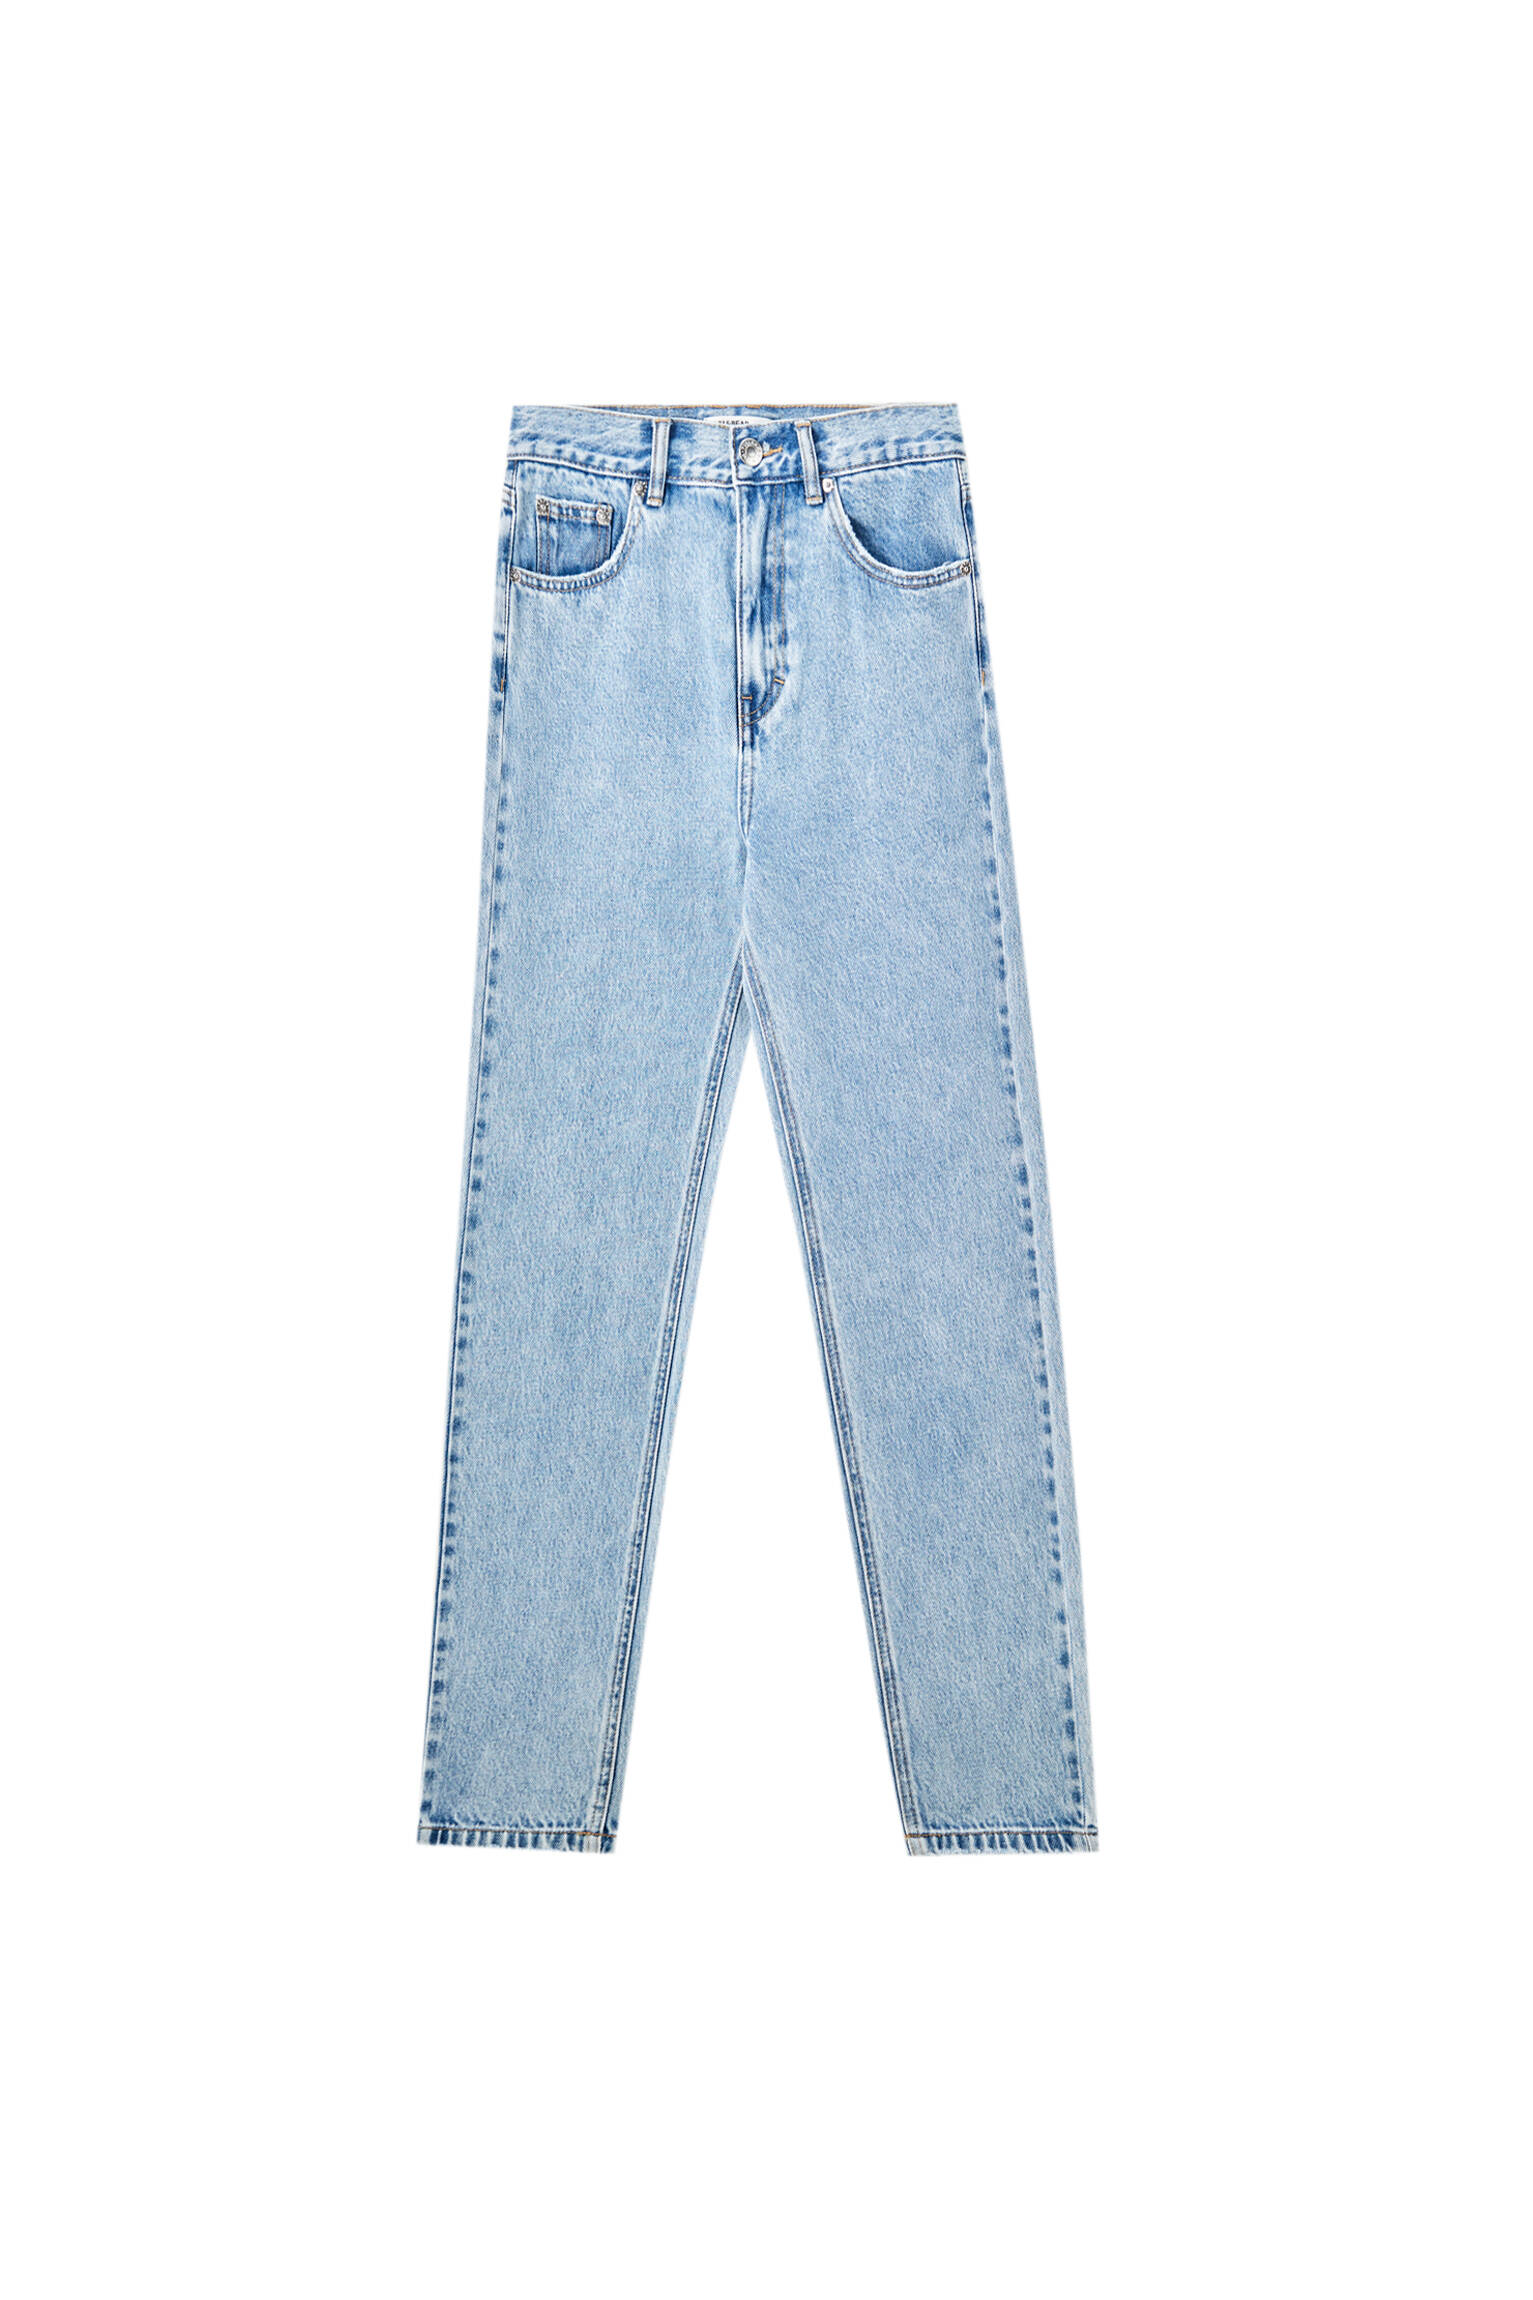 Базовые джинсы mom fit - органический хлопок (не менее 50%) ГОЛУБОЙ Pull & Bear